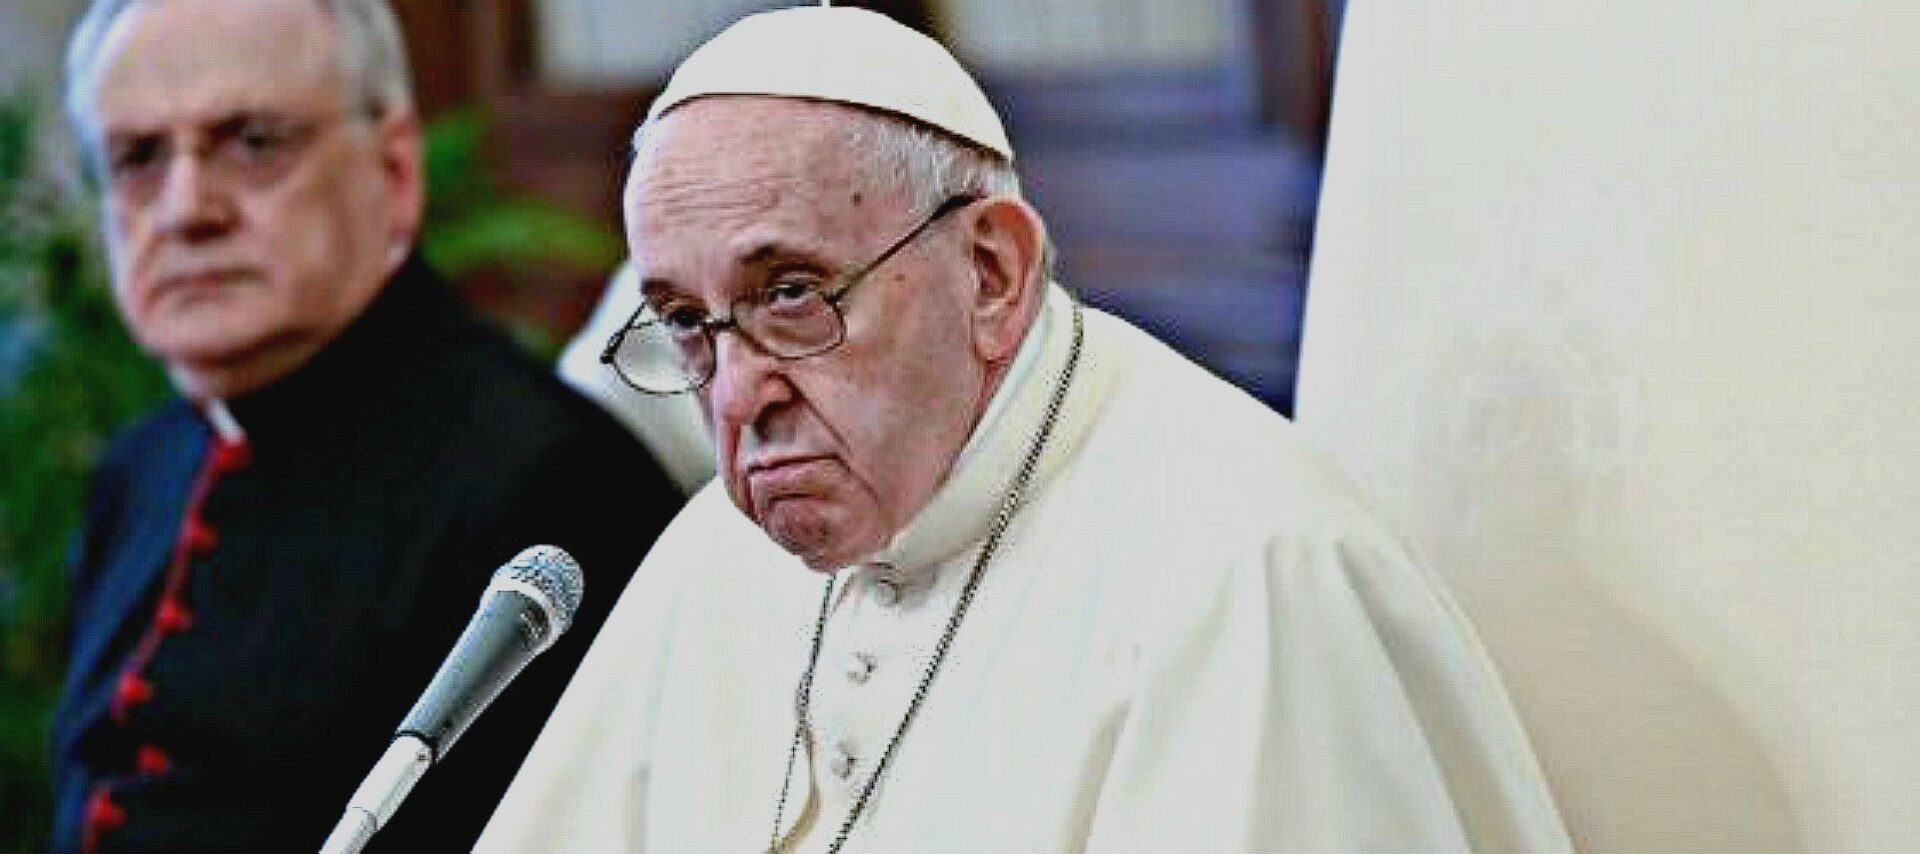 Le pape François à l'audience du 2 décembre 2020  | © Vatican Media